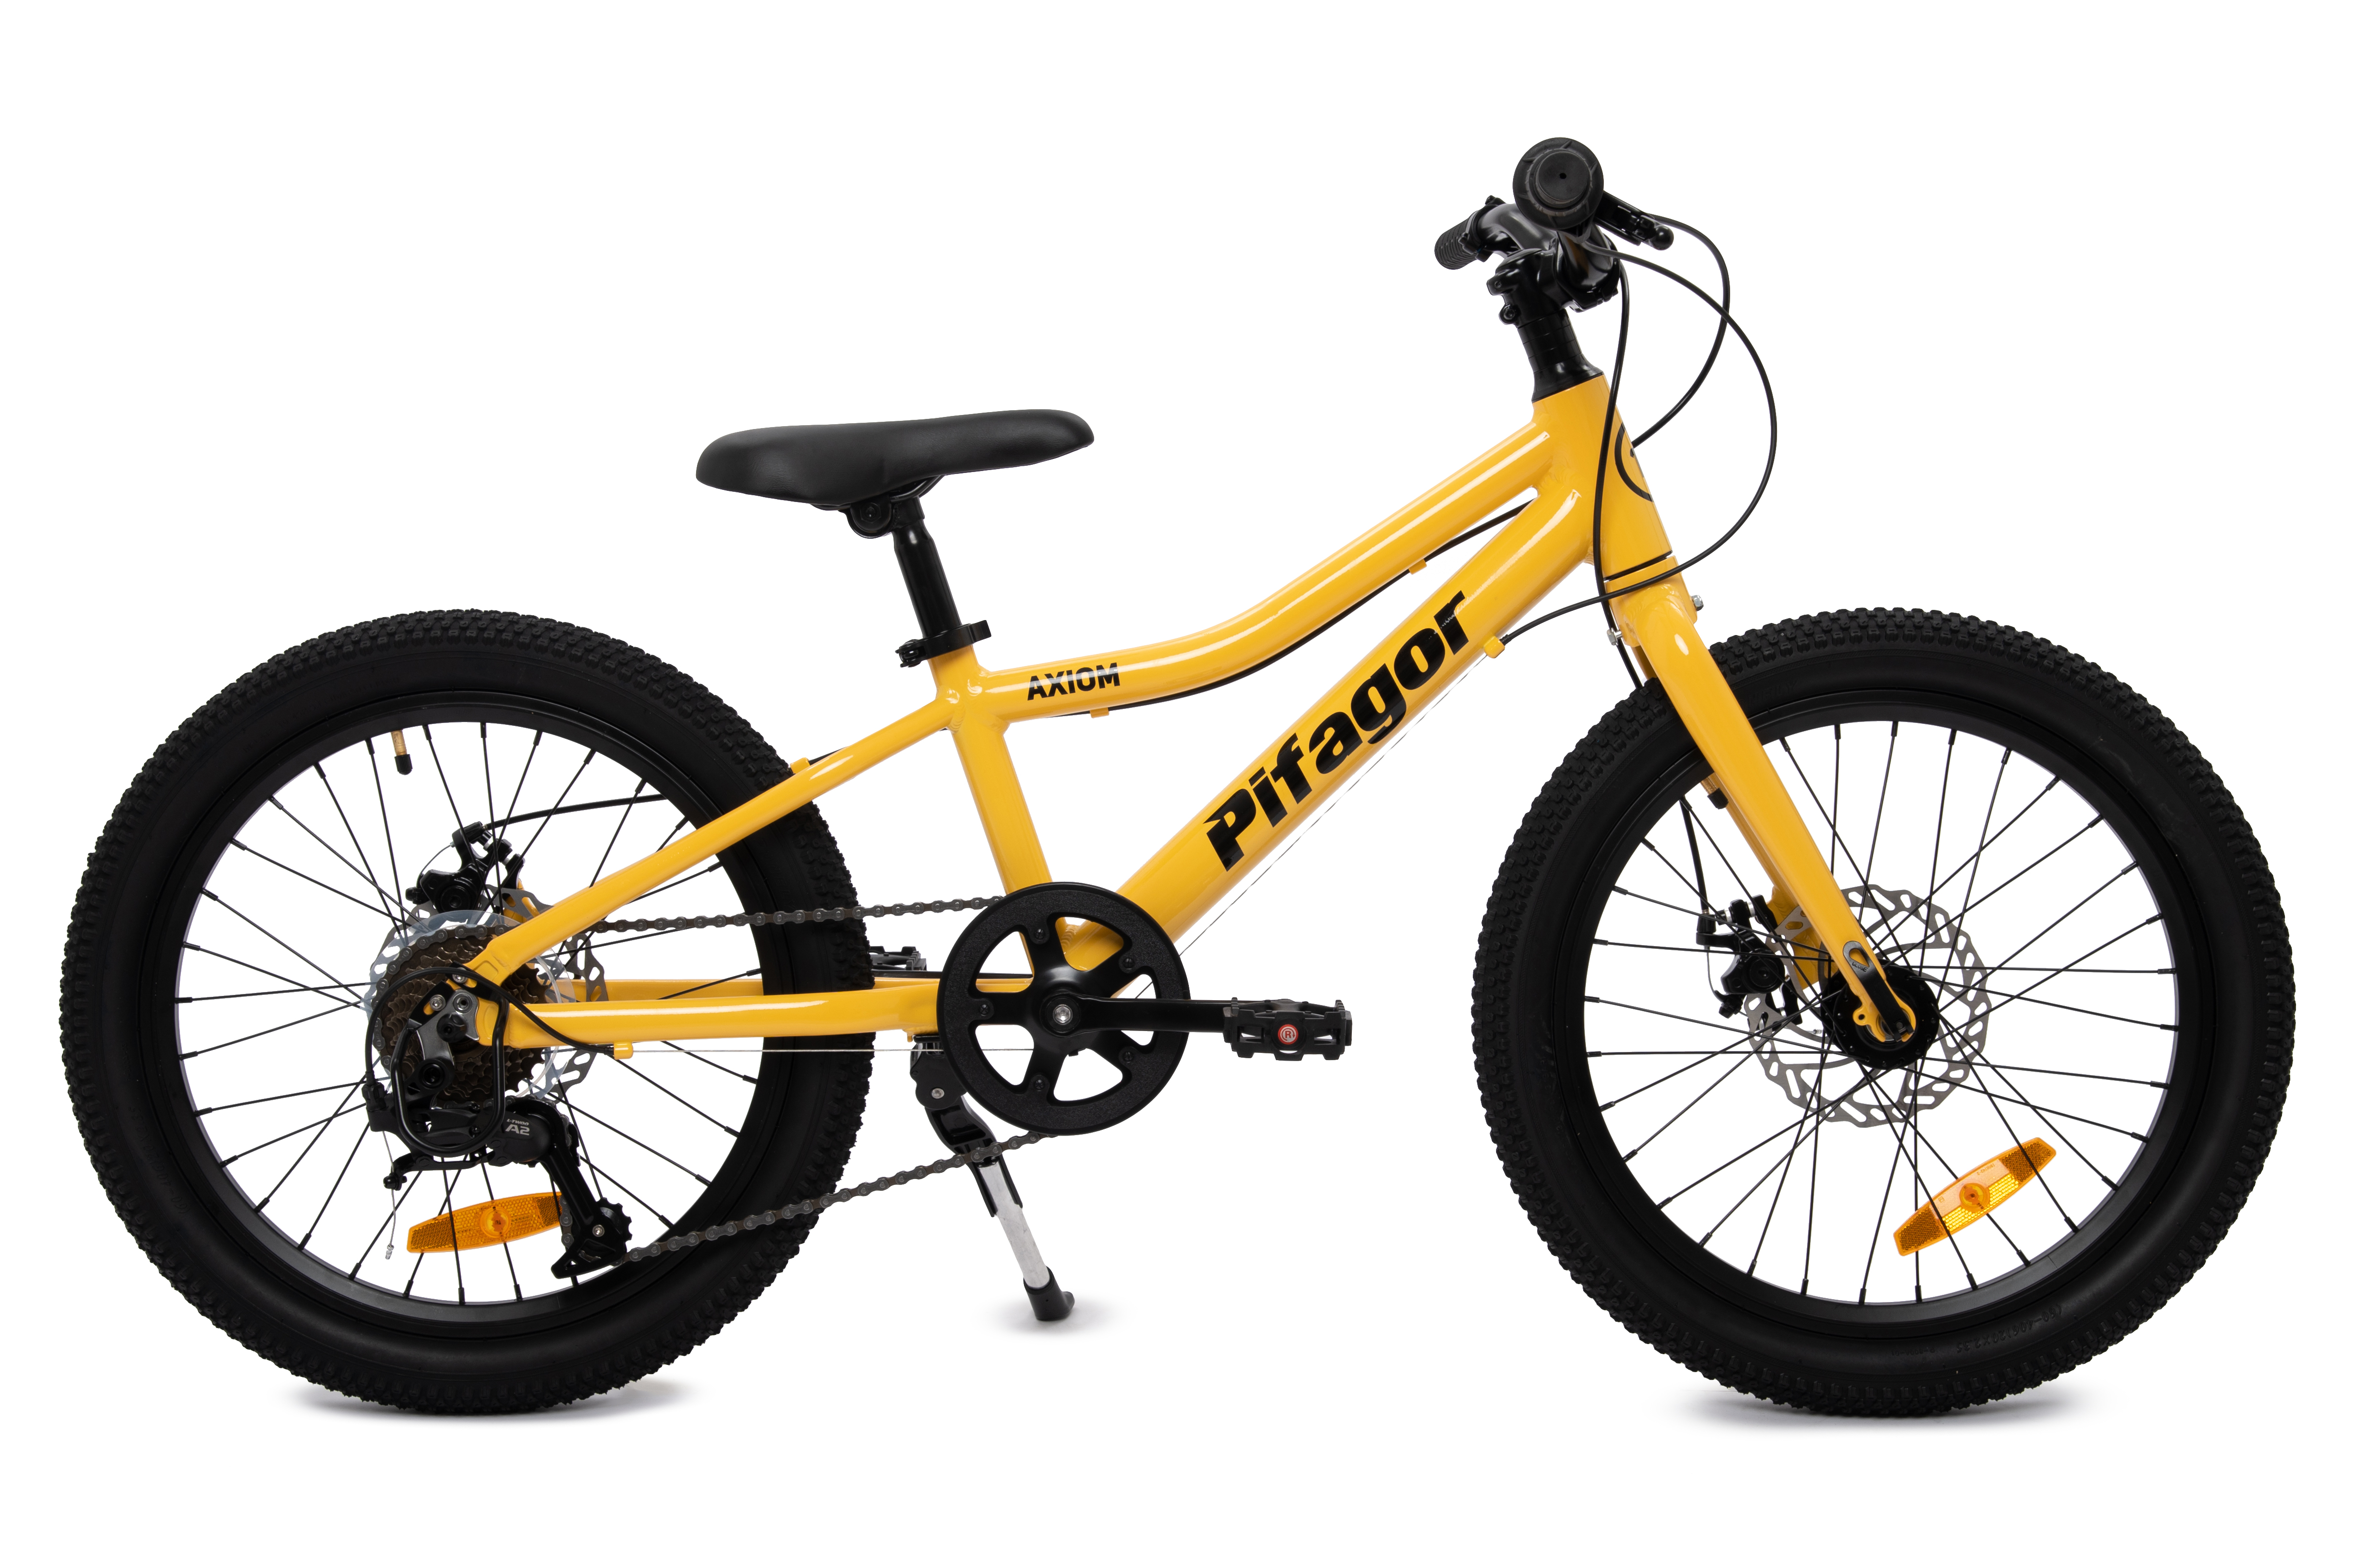 Велосипед Pifagor Axiom 2027 900 ₽Зеленый, Желтый, Черный металлик в Москве и с доставкой